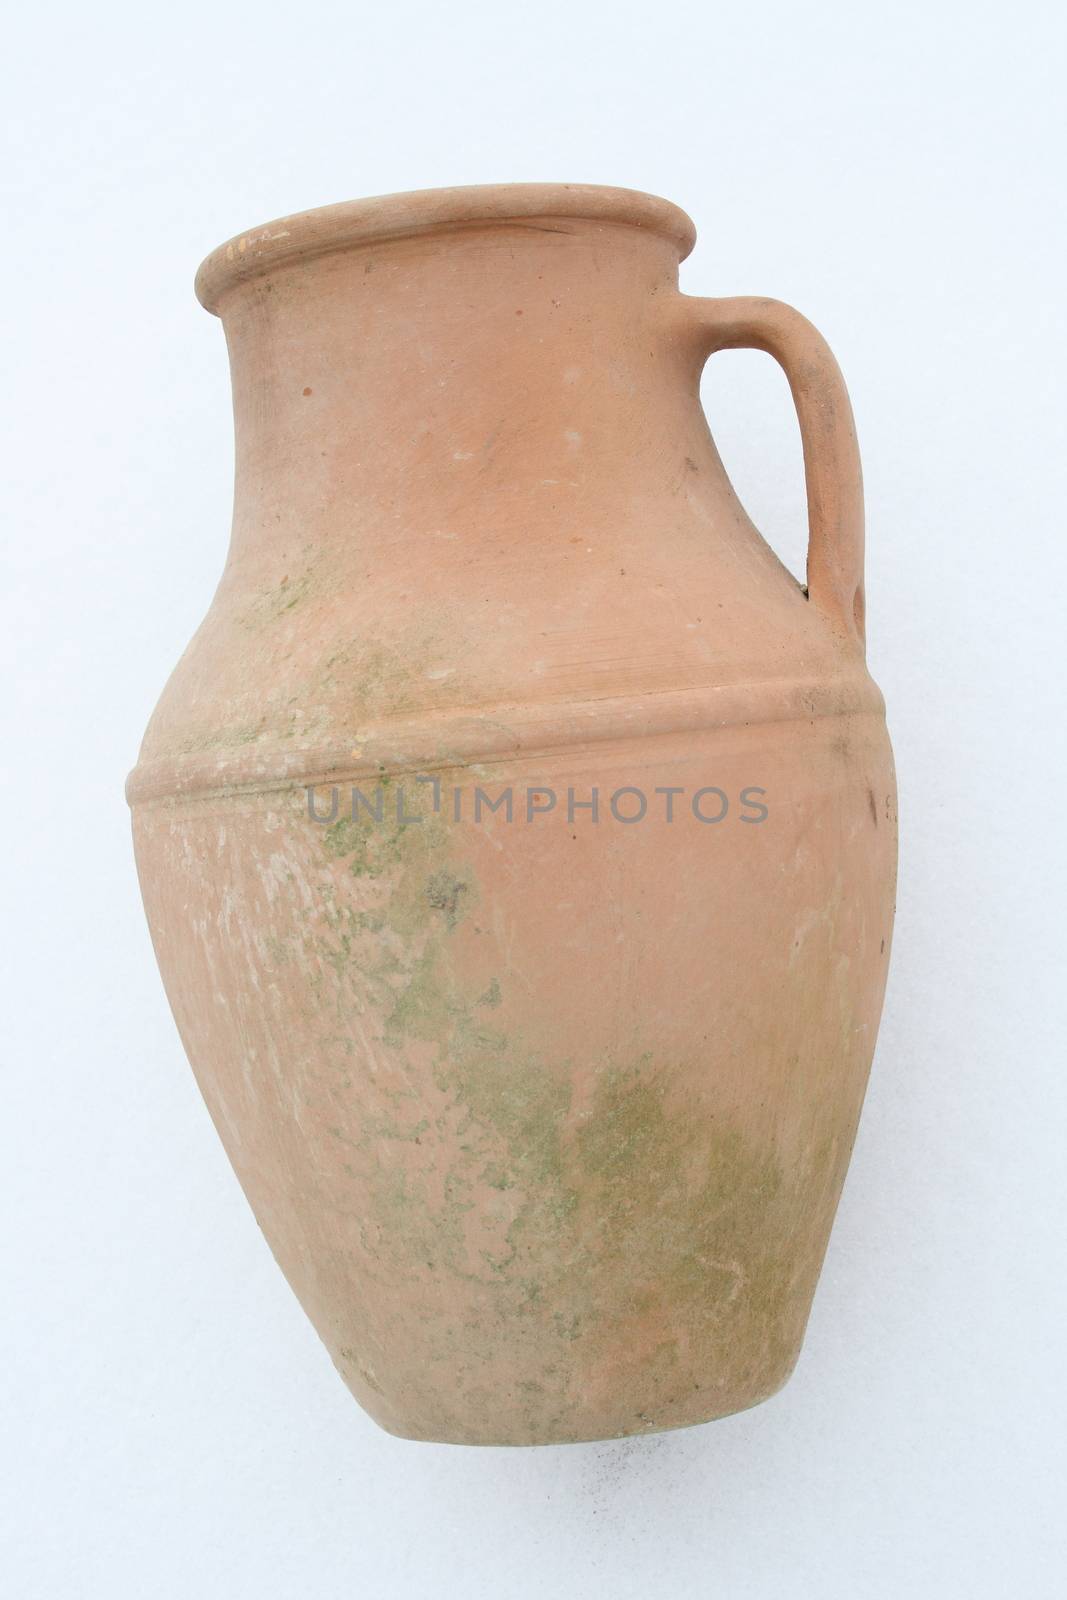 Terracotta amphora lying on a white background  liegende Terrakotta Amphore auf wei�em Hintergrund   by hadot